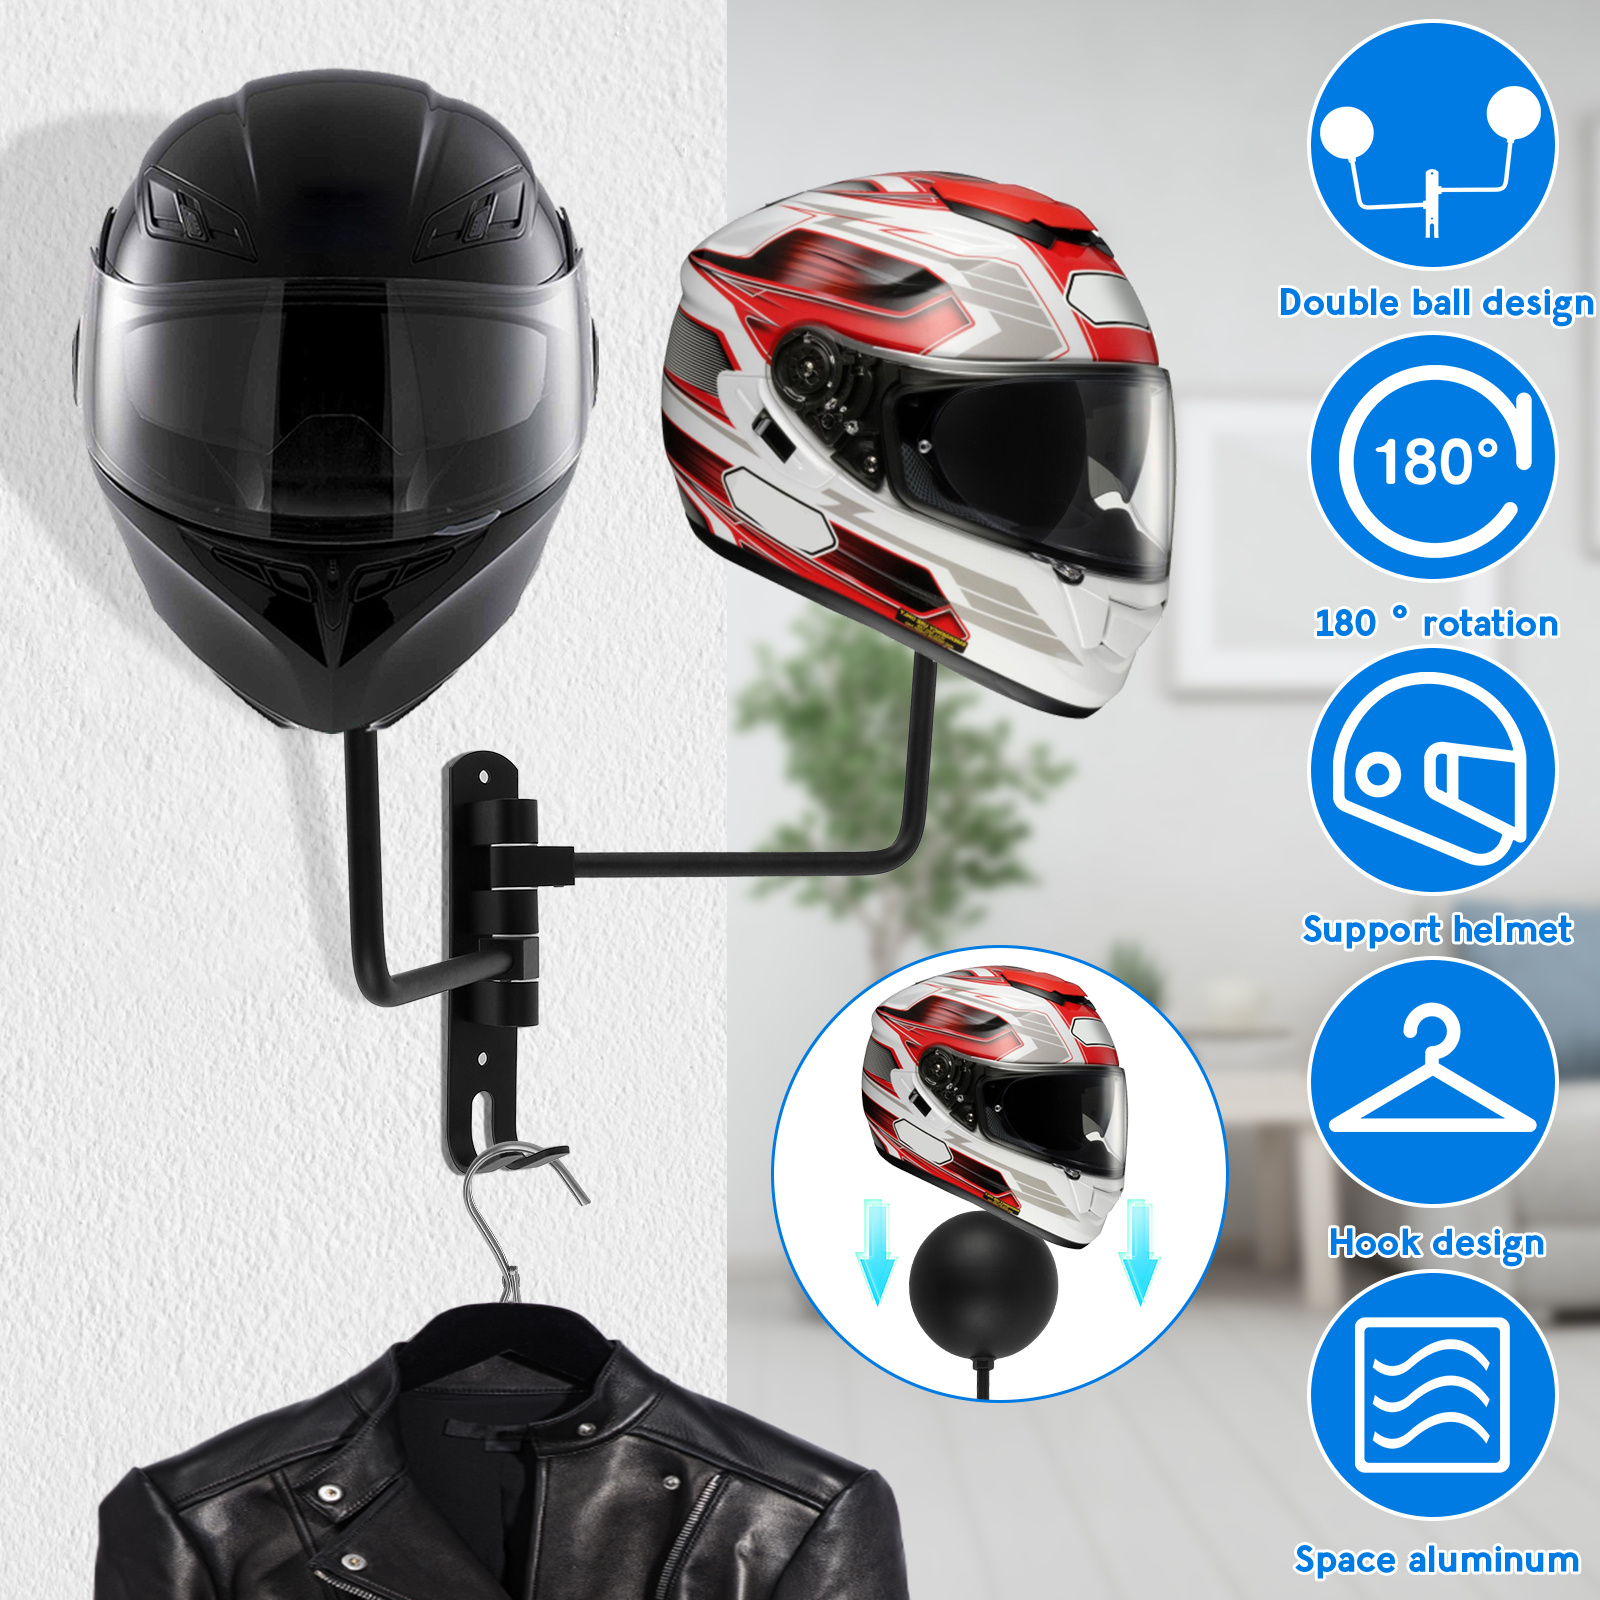 Accesorios de motocicleta, soporte para casco, colgador de casco, gancho  montado en la pared para abrigos, sombreros, gorras - actualizado